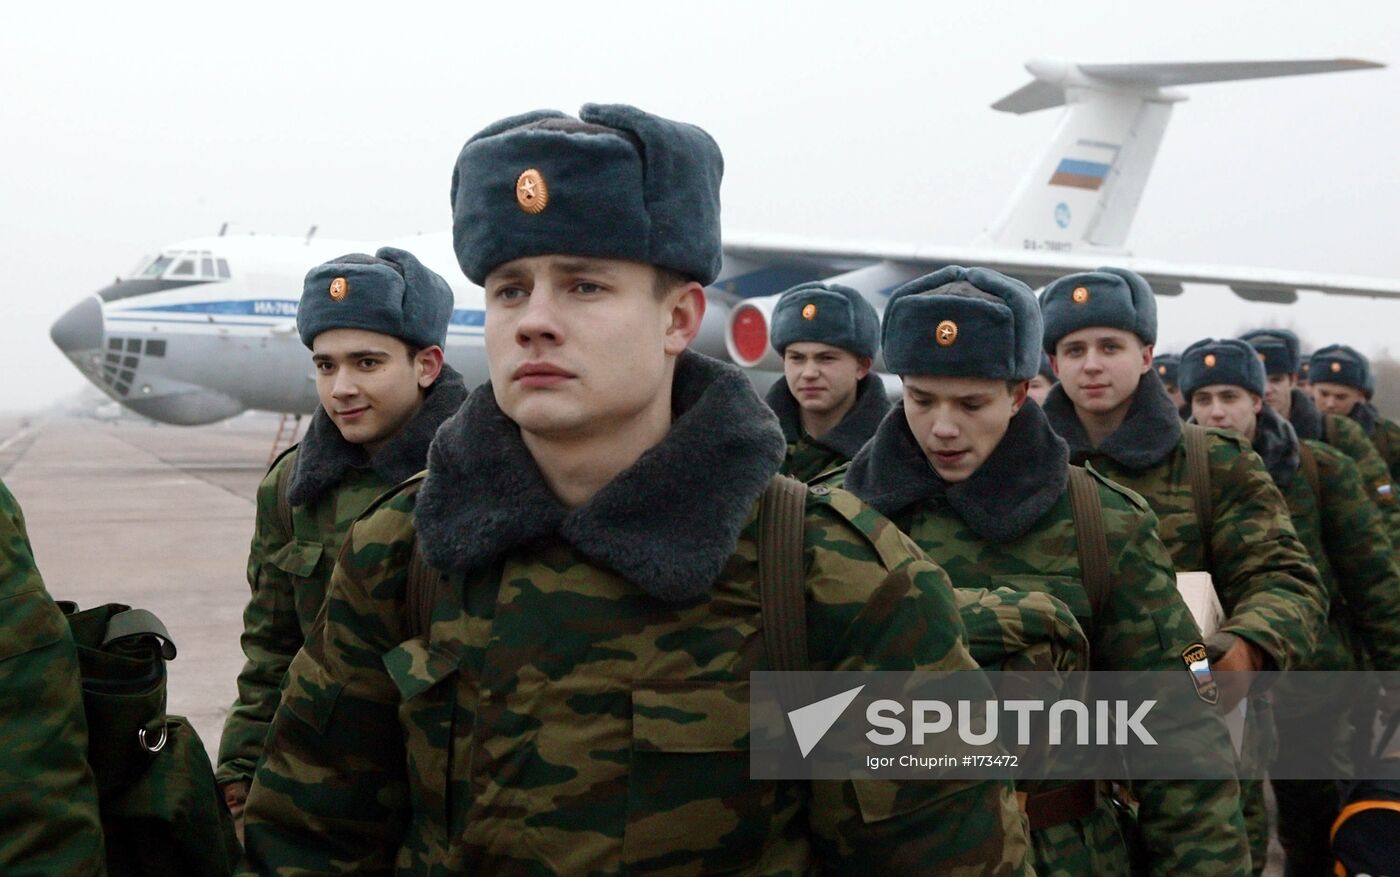 Recruits at the Chkalovsk air base